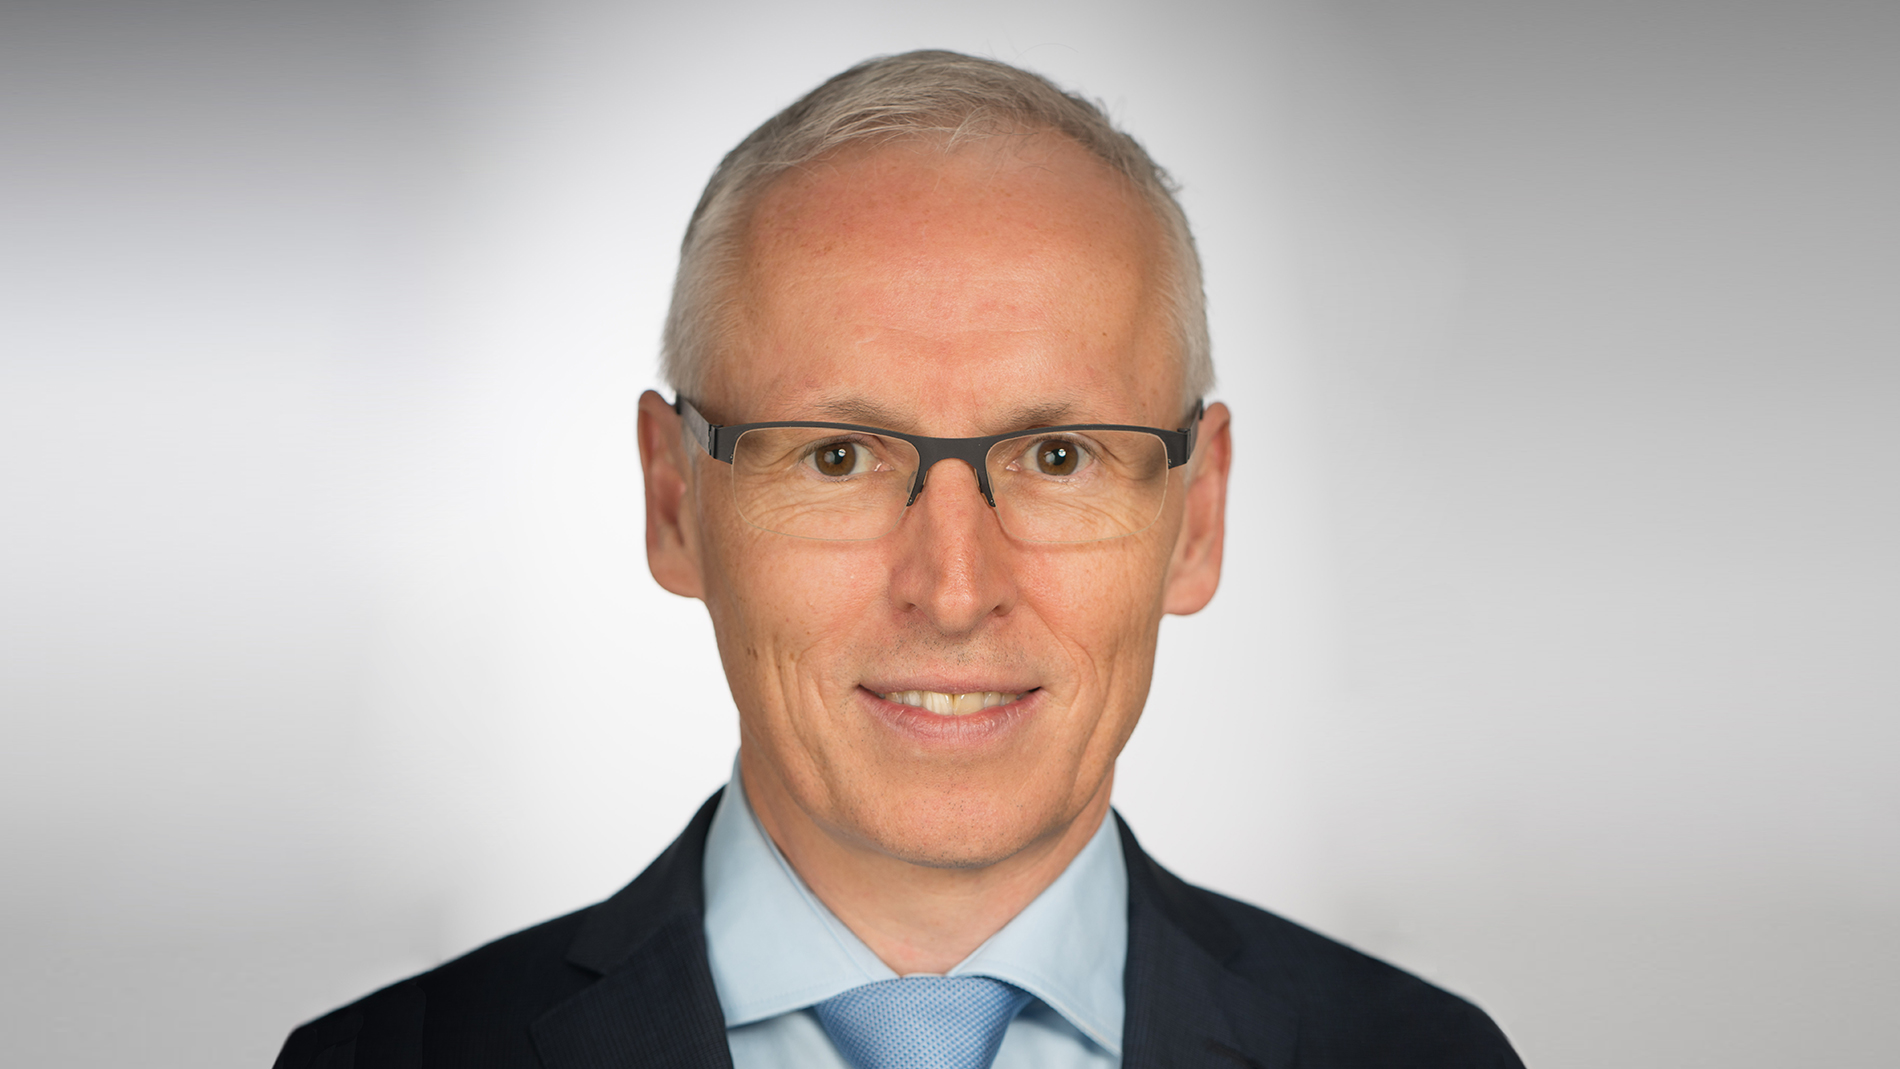 Dr. Stefan Linder, Alpiq, Switzerland